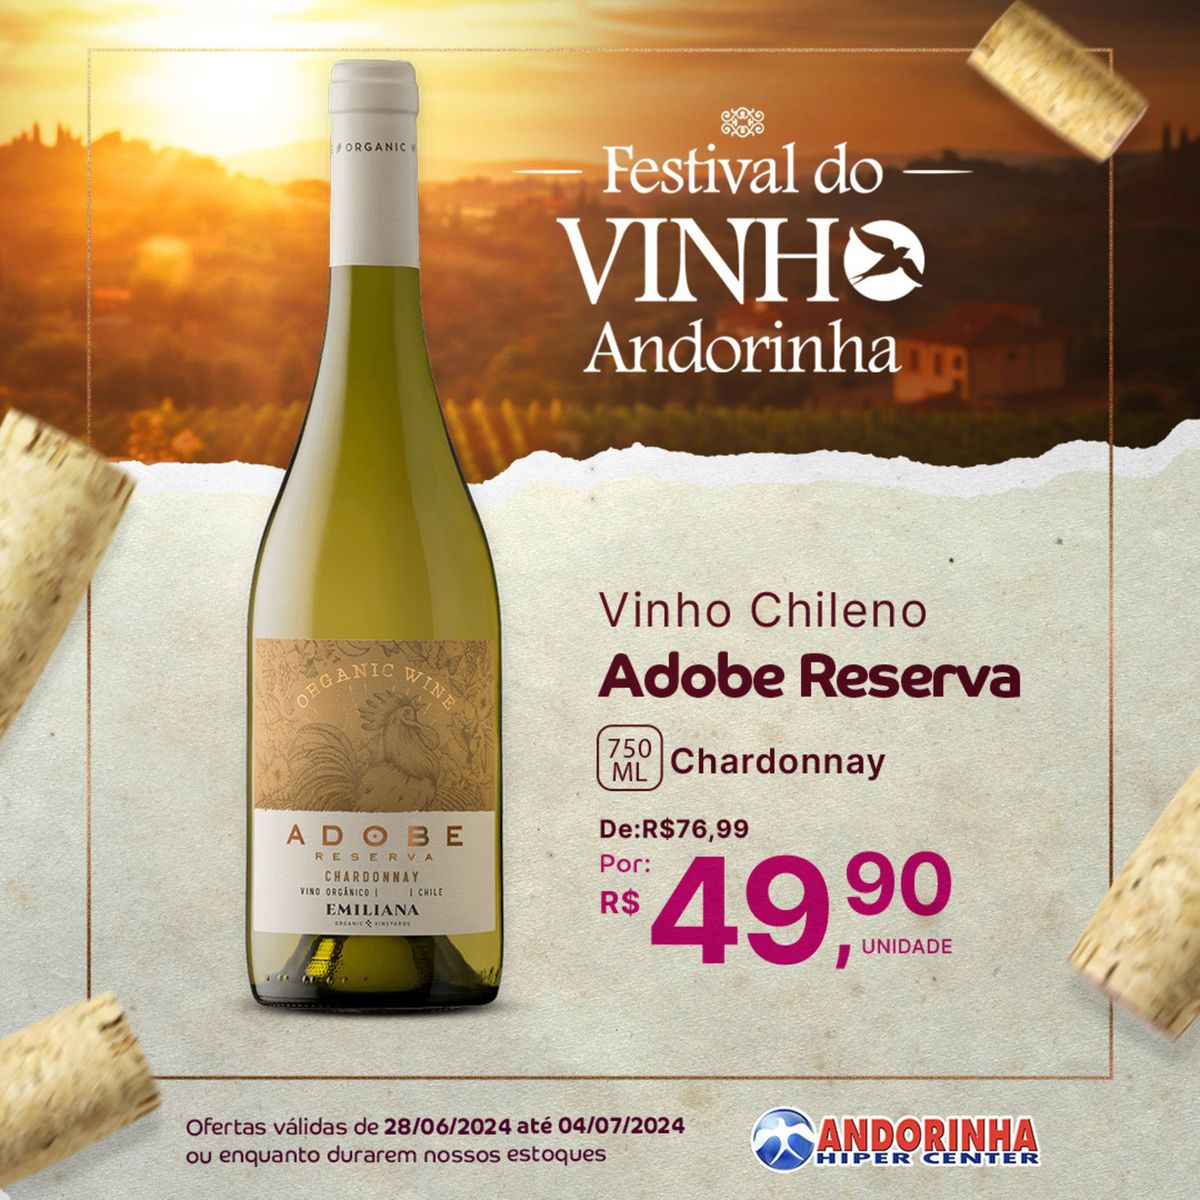 Vinho Chileno Adobe Reserva Chardonnay